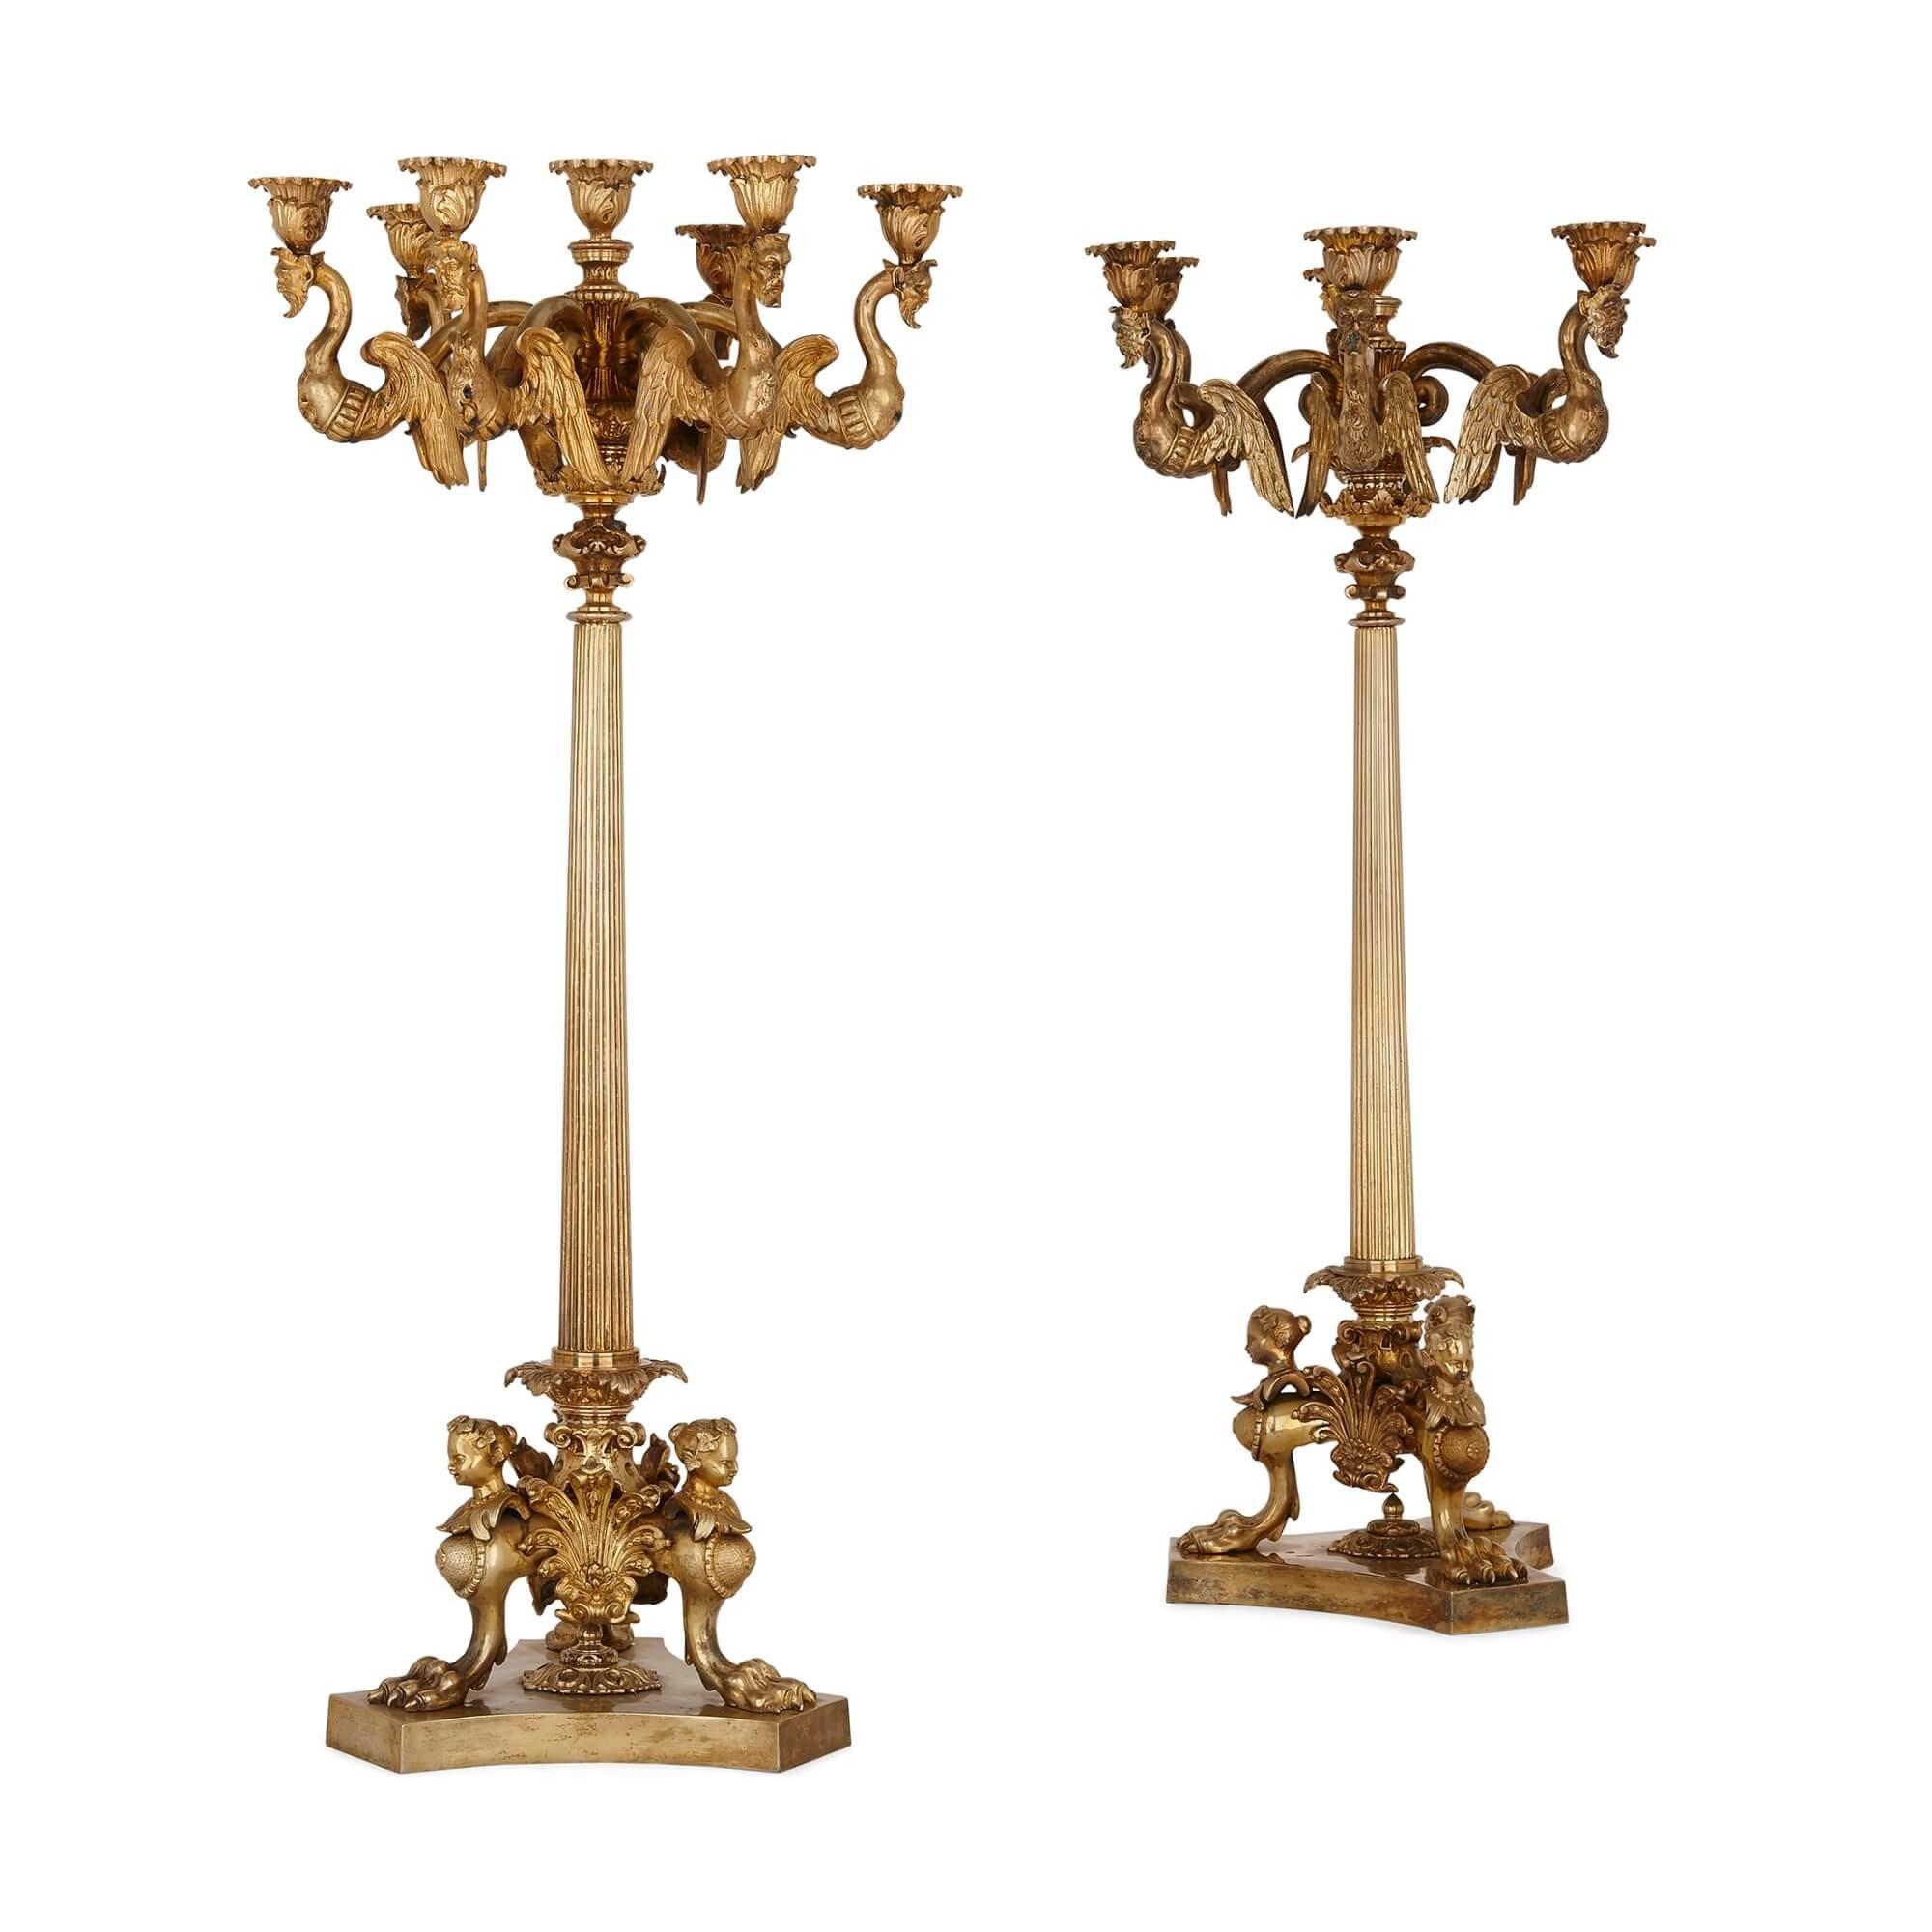 Paar französische Tischkandelaber aus vergoldeter Bronze
Französisch, 19. Jahrhundert
Höhe 75cm, Durchmesser 35cm

Die feinen Kandelaber aus vergoldeter Bronze dieses Paares sind im eklektischen Stil gefertigt, der während der Herrschaft von